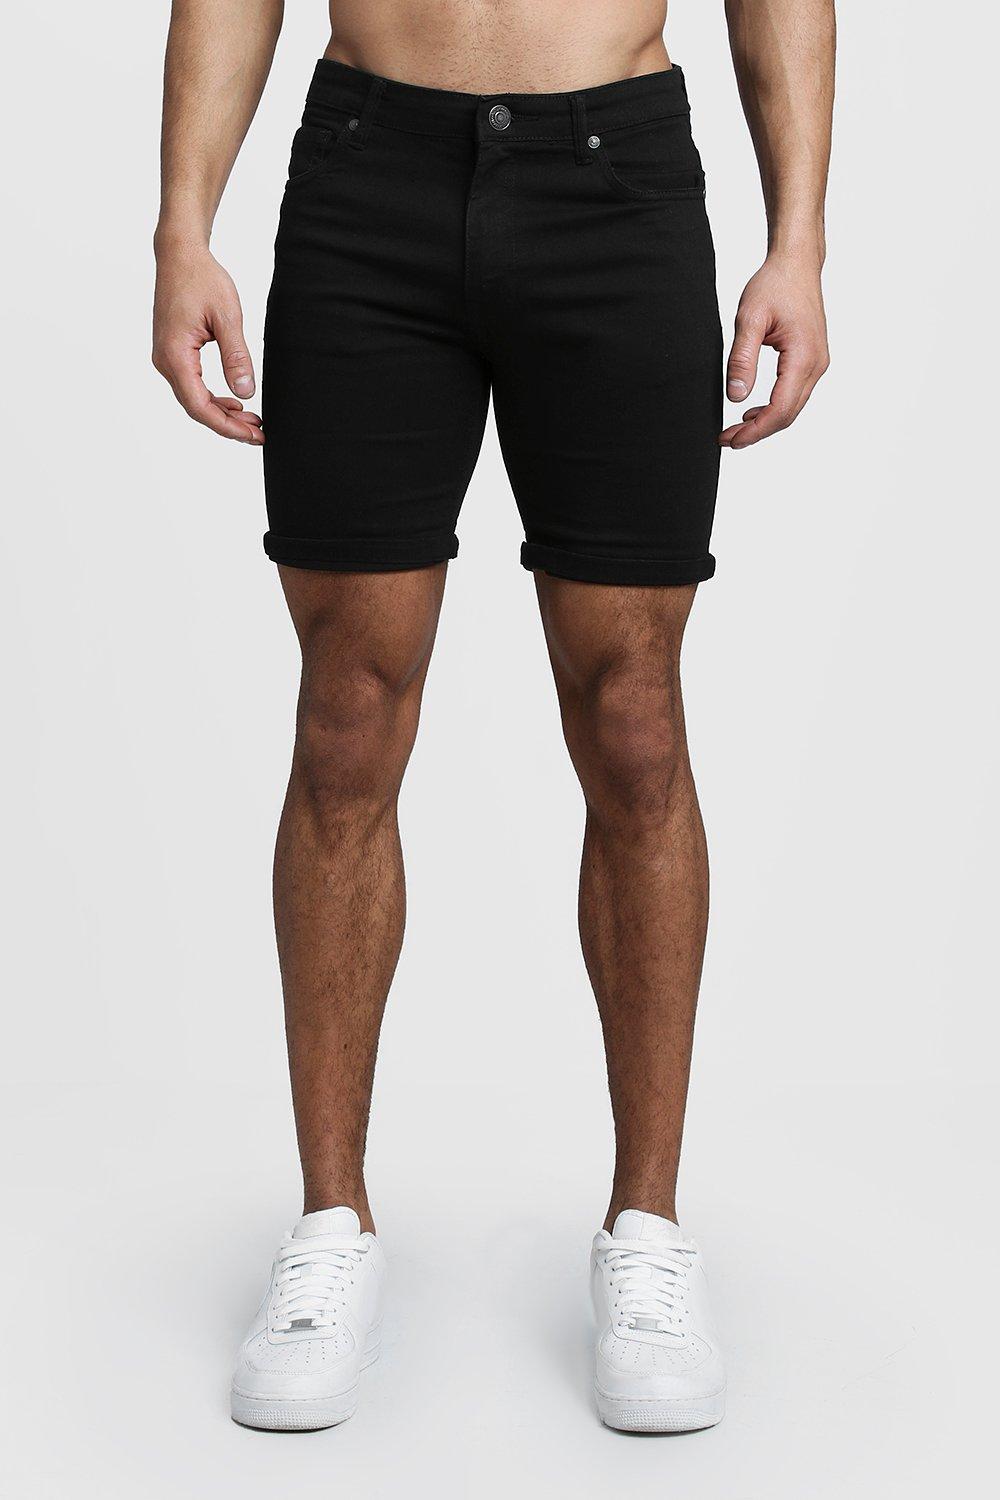 mens skinny denim shorts